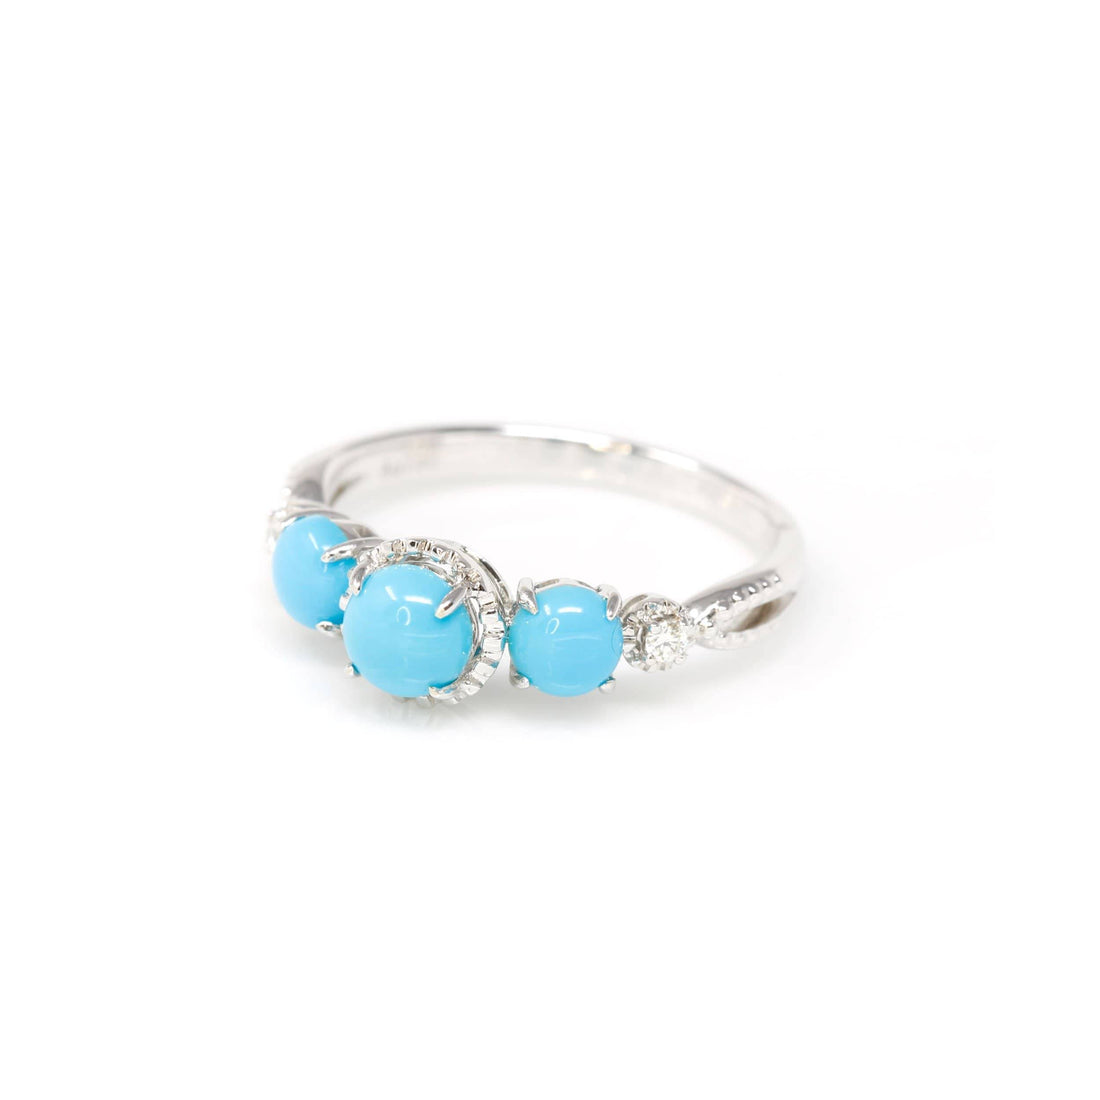 Baikalla Jewelry 18k Gold Turquoise Ring Baikalla™ "Mary" 18k Gold Genuine 3 Stone Persian Blue Arizona Turquoise Engagement Ring